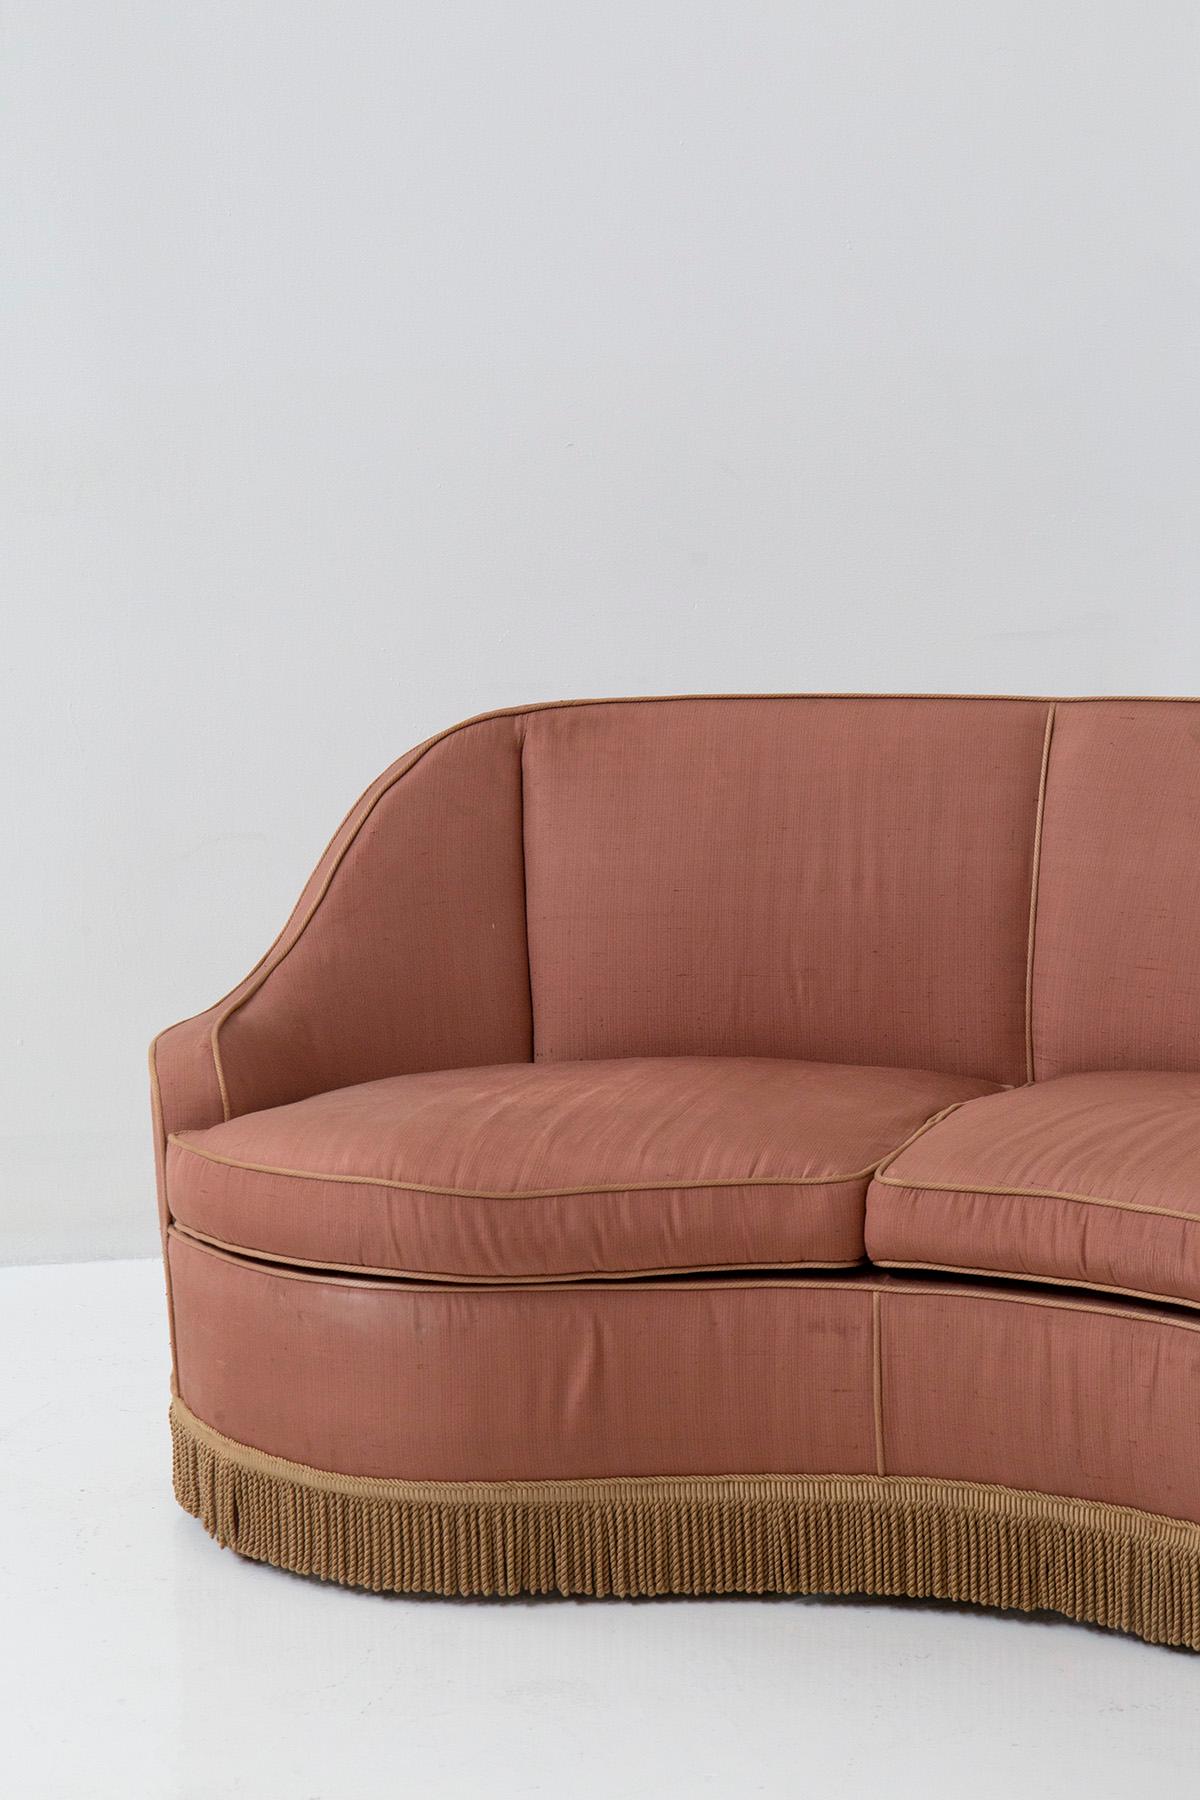 Italian three-seater sofa in pink fabric attributed to Gio Ponti 3